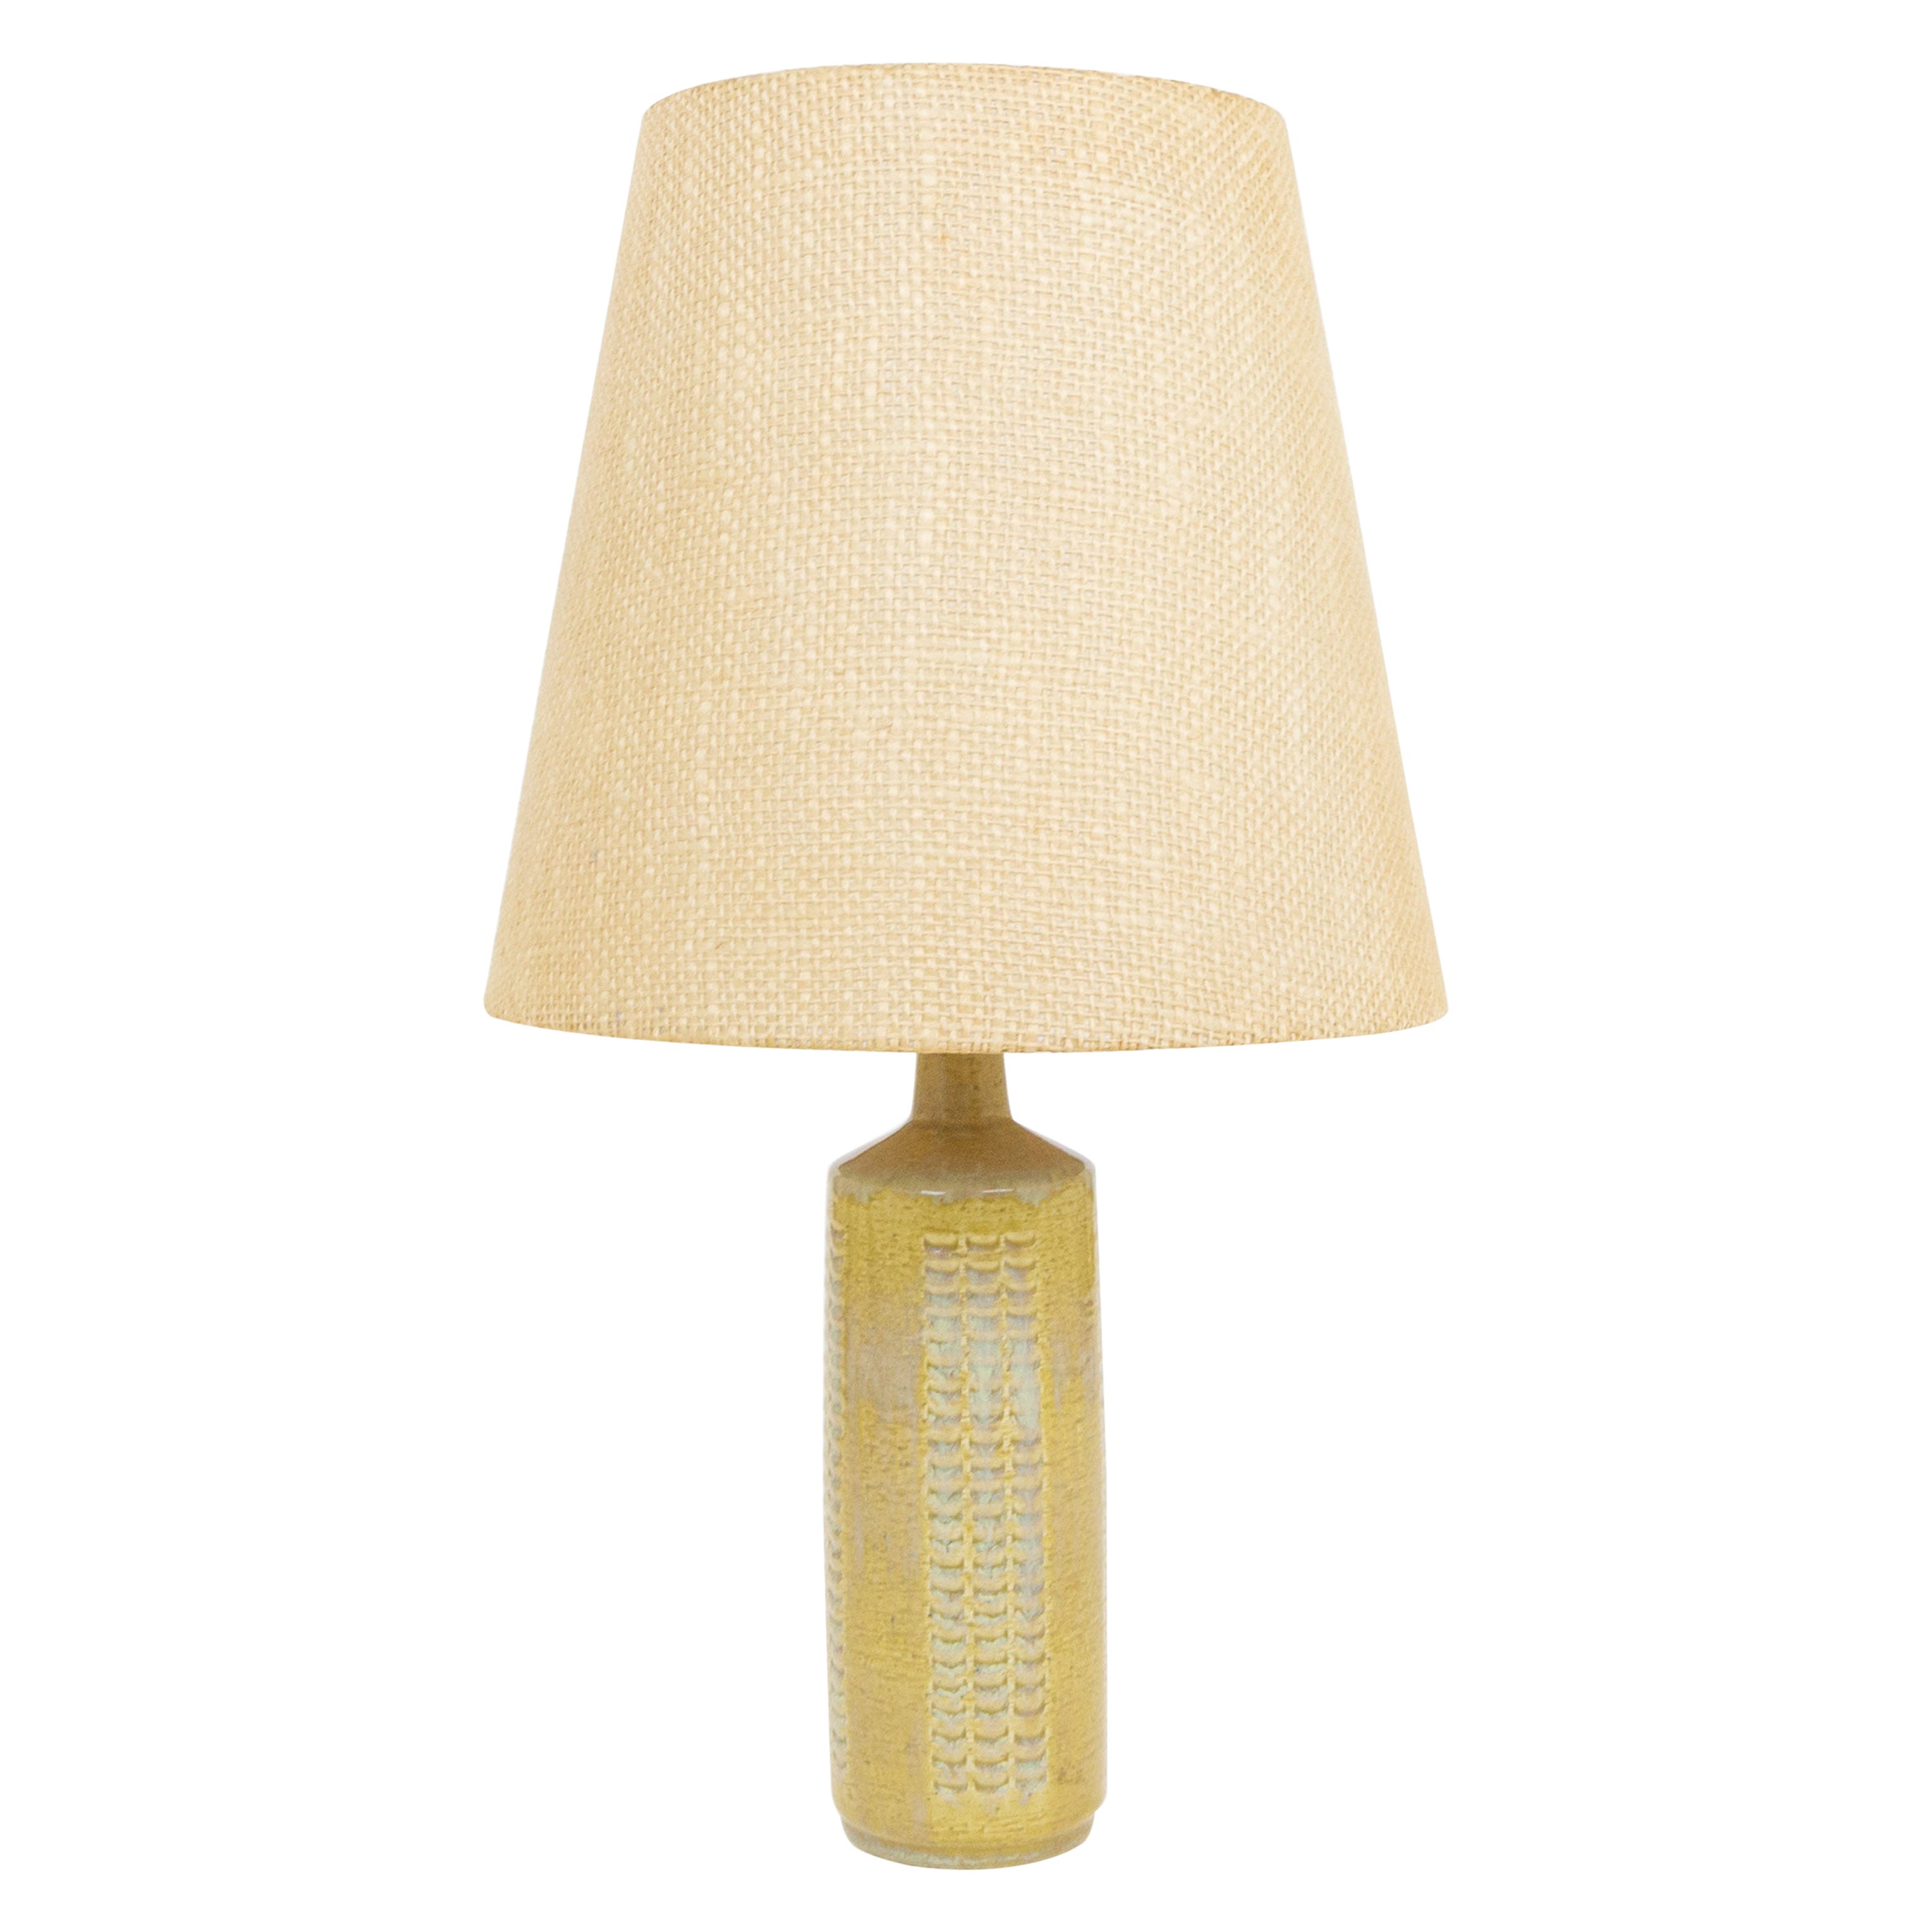 Grain DL/27 table lamp by Linnemann-Schmidt for Palshus, 1960s For Sale